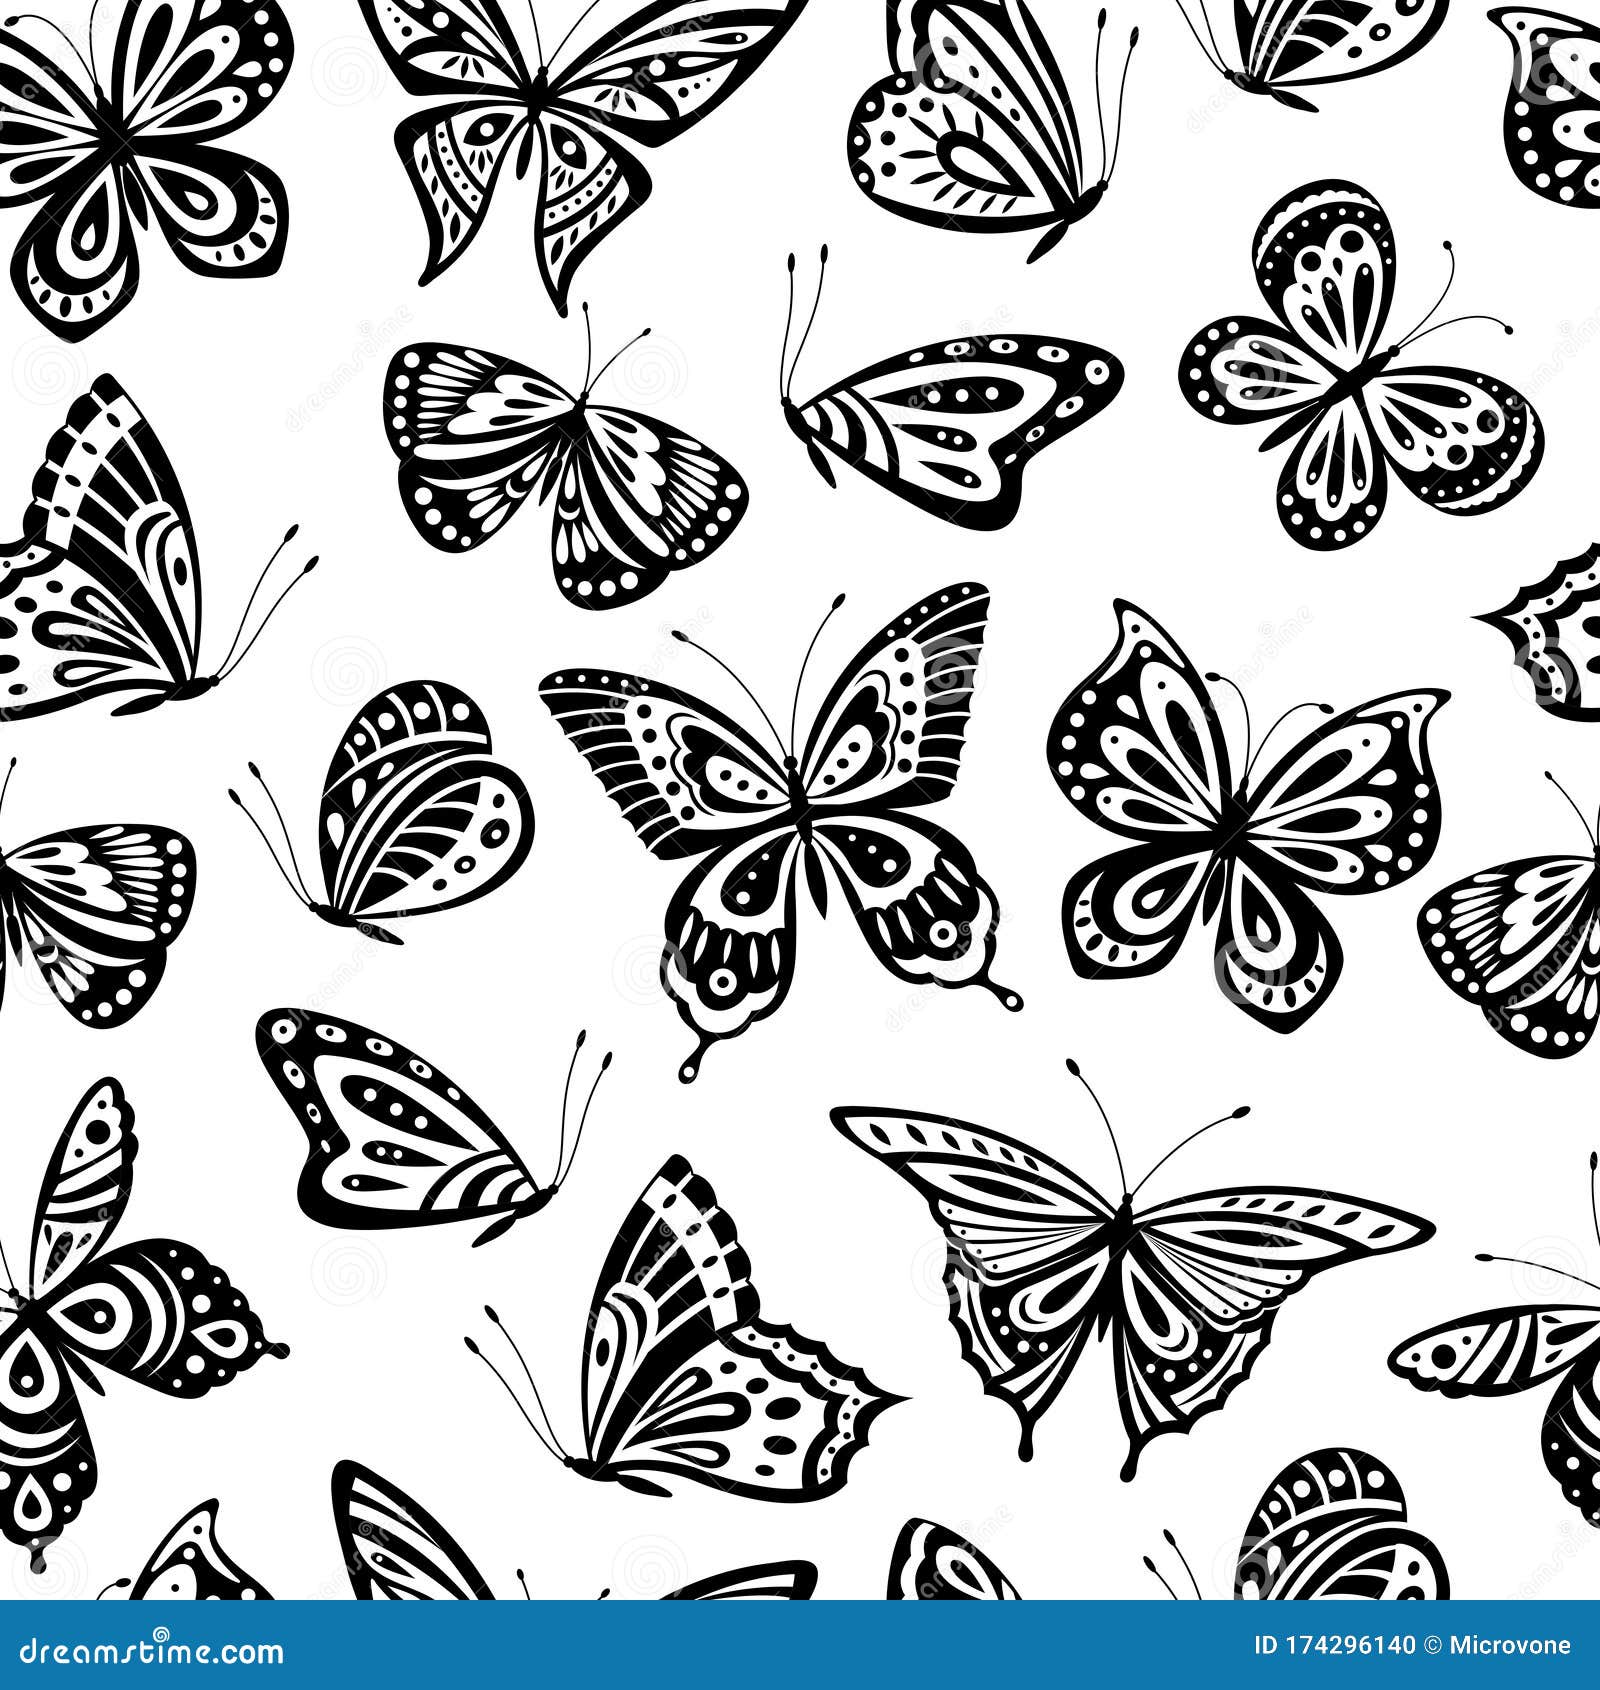 蝴蝶图案浪漫的飞蝶无缝纹理抽象美丽的春天壁纸纺织品或向量例证 插画包括有浪漫的飞蝶无缝纹理 抽象美丽的春天壁纸